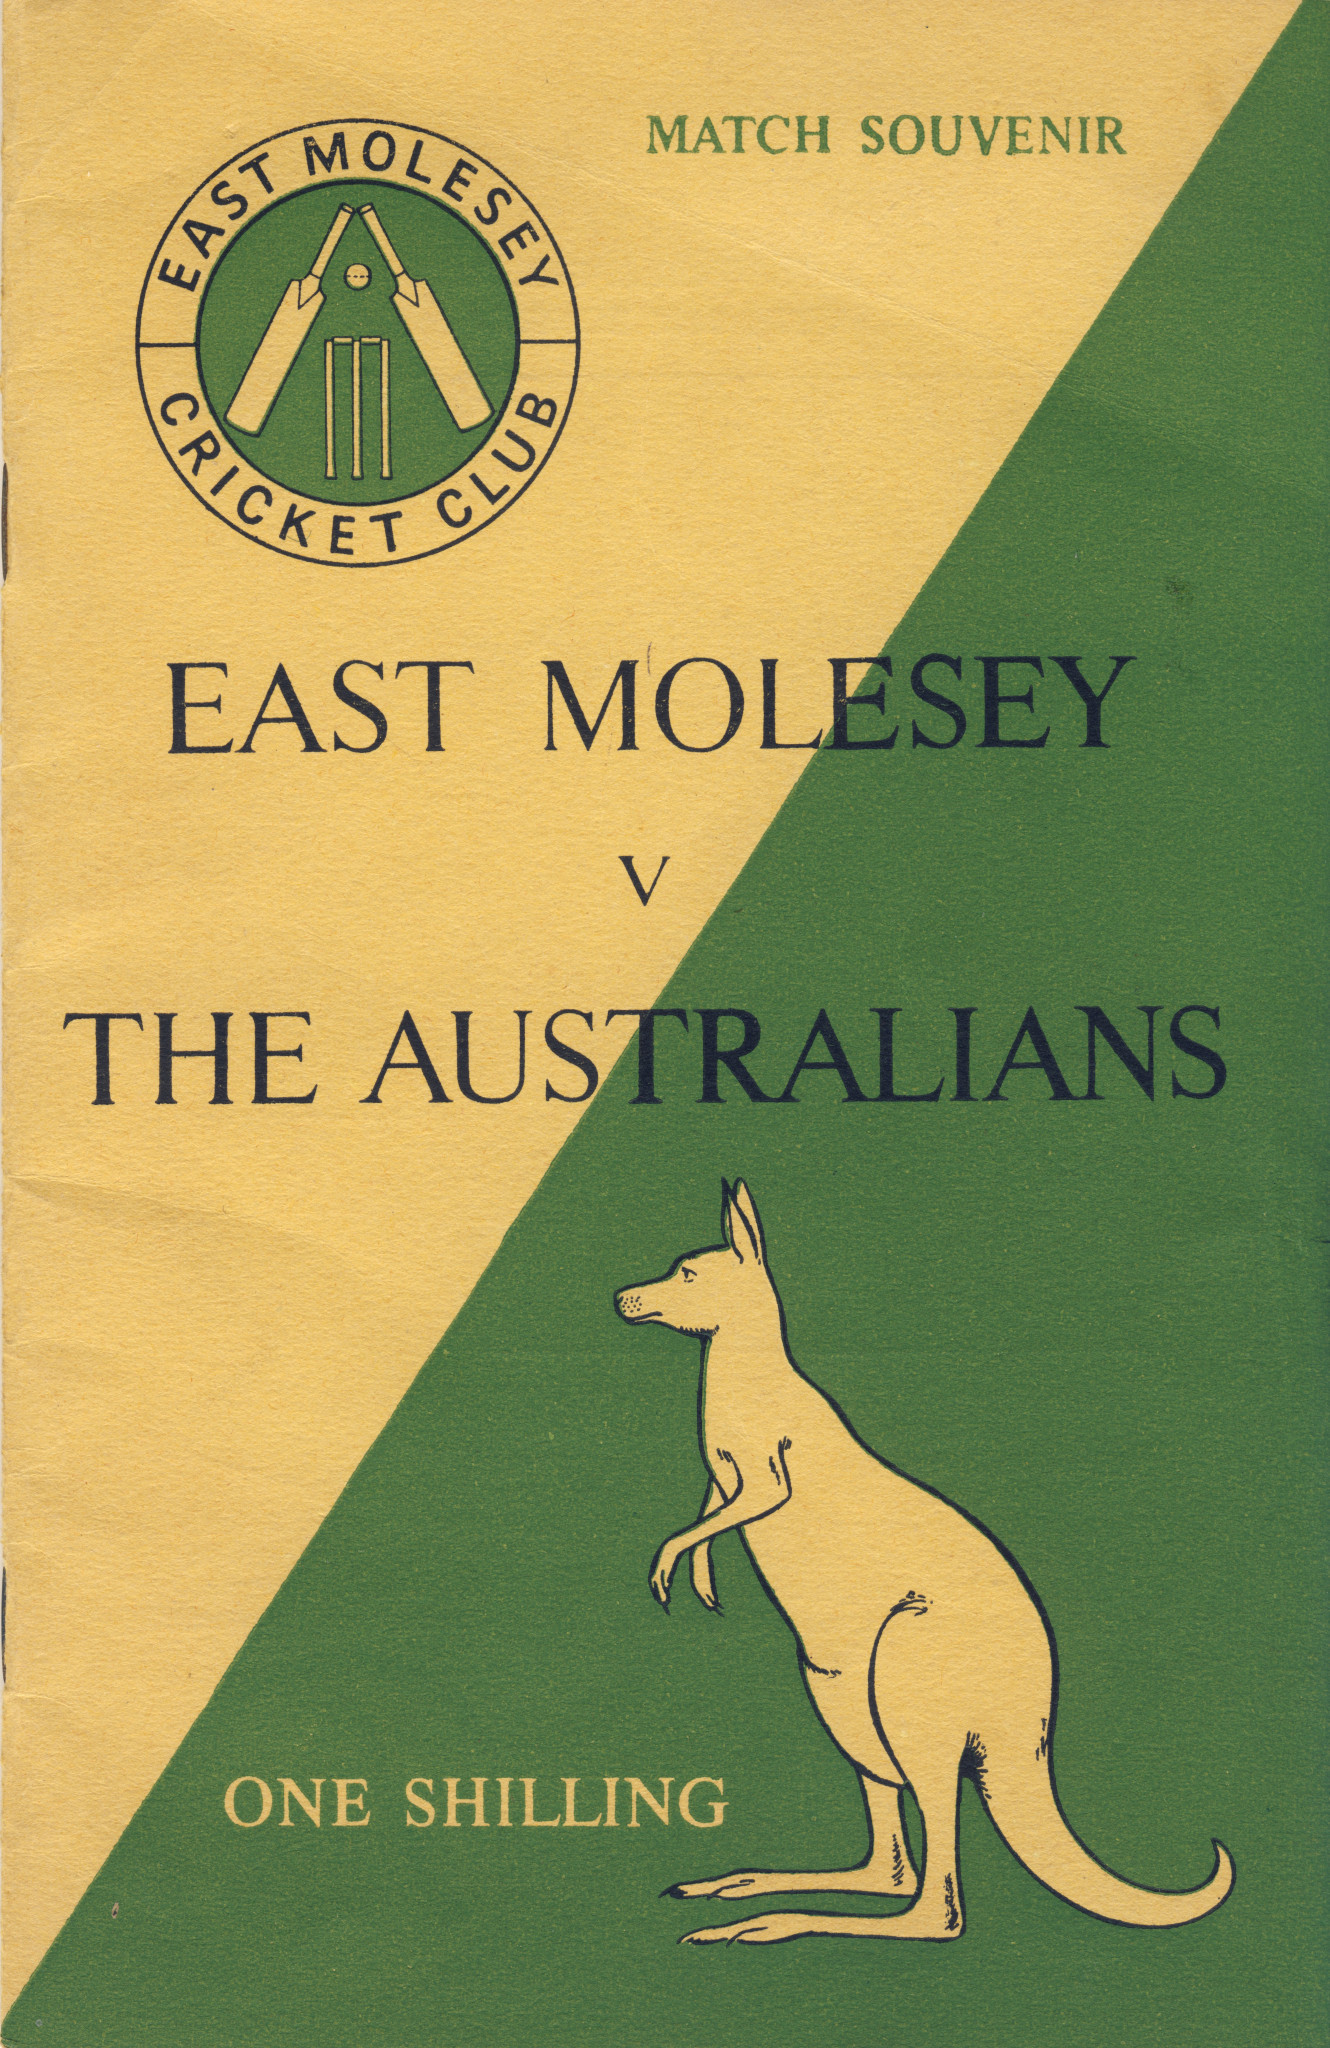 A souvenir of a unique cricketing occasion in 1953 ©EMCC